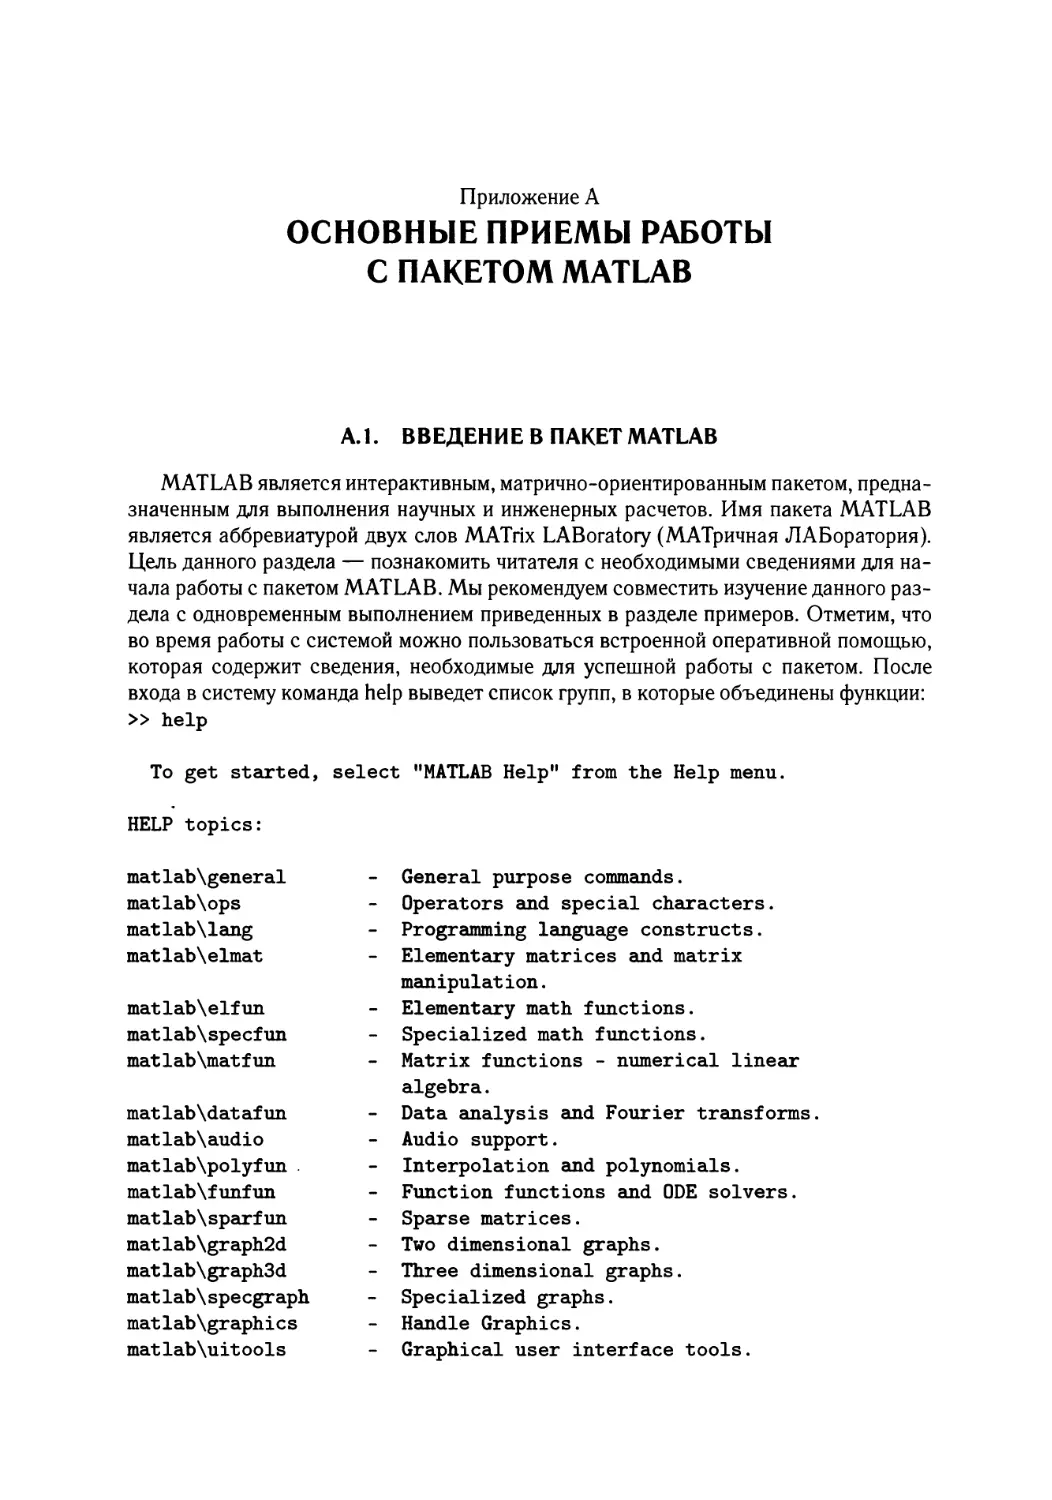 А Основные приемы работы с пакетом MATLAB
А. 1. Введение в пакет MATLAB